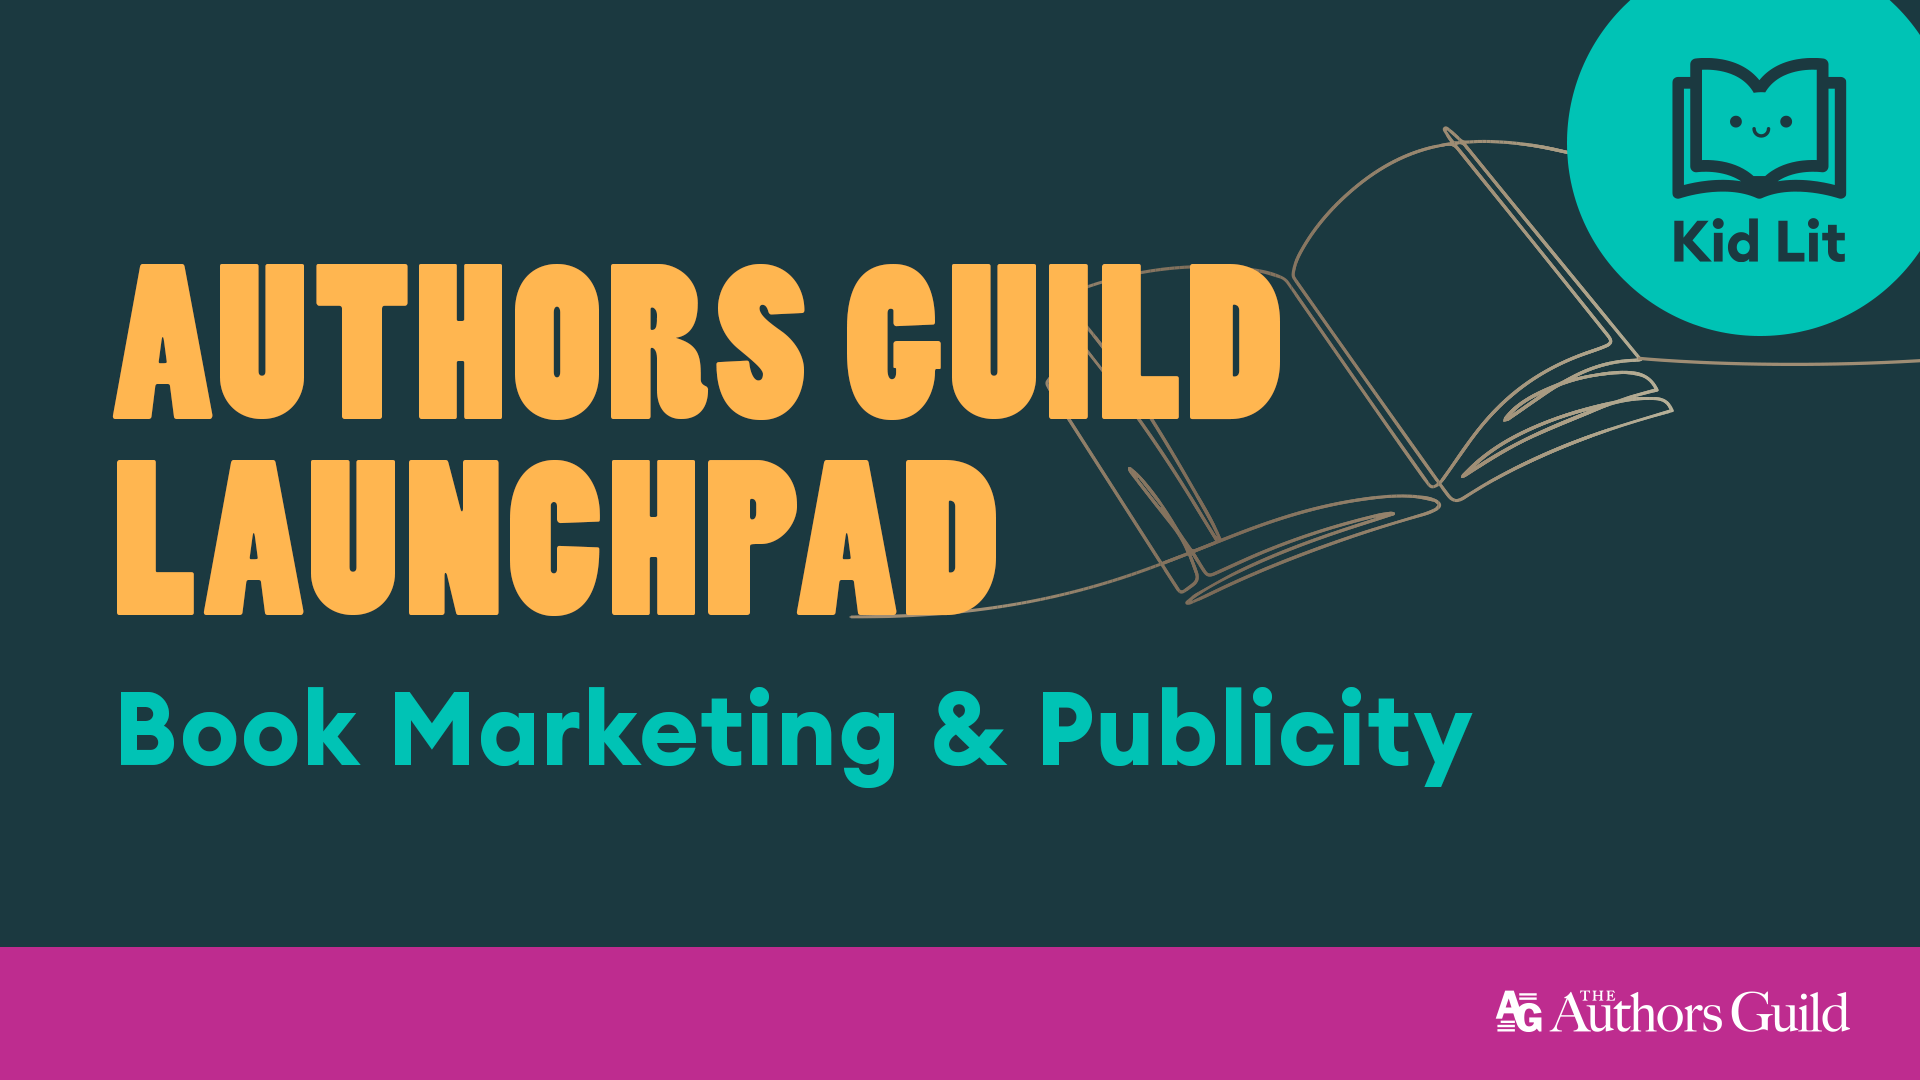 Authors Guild Launchpad: Kit Lit